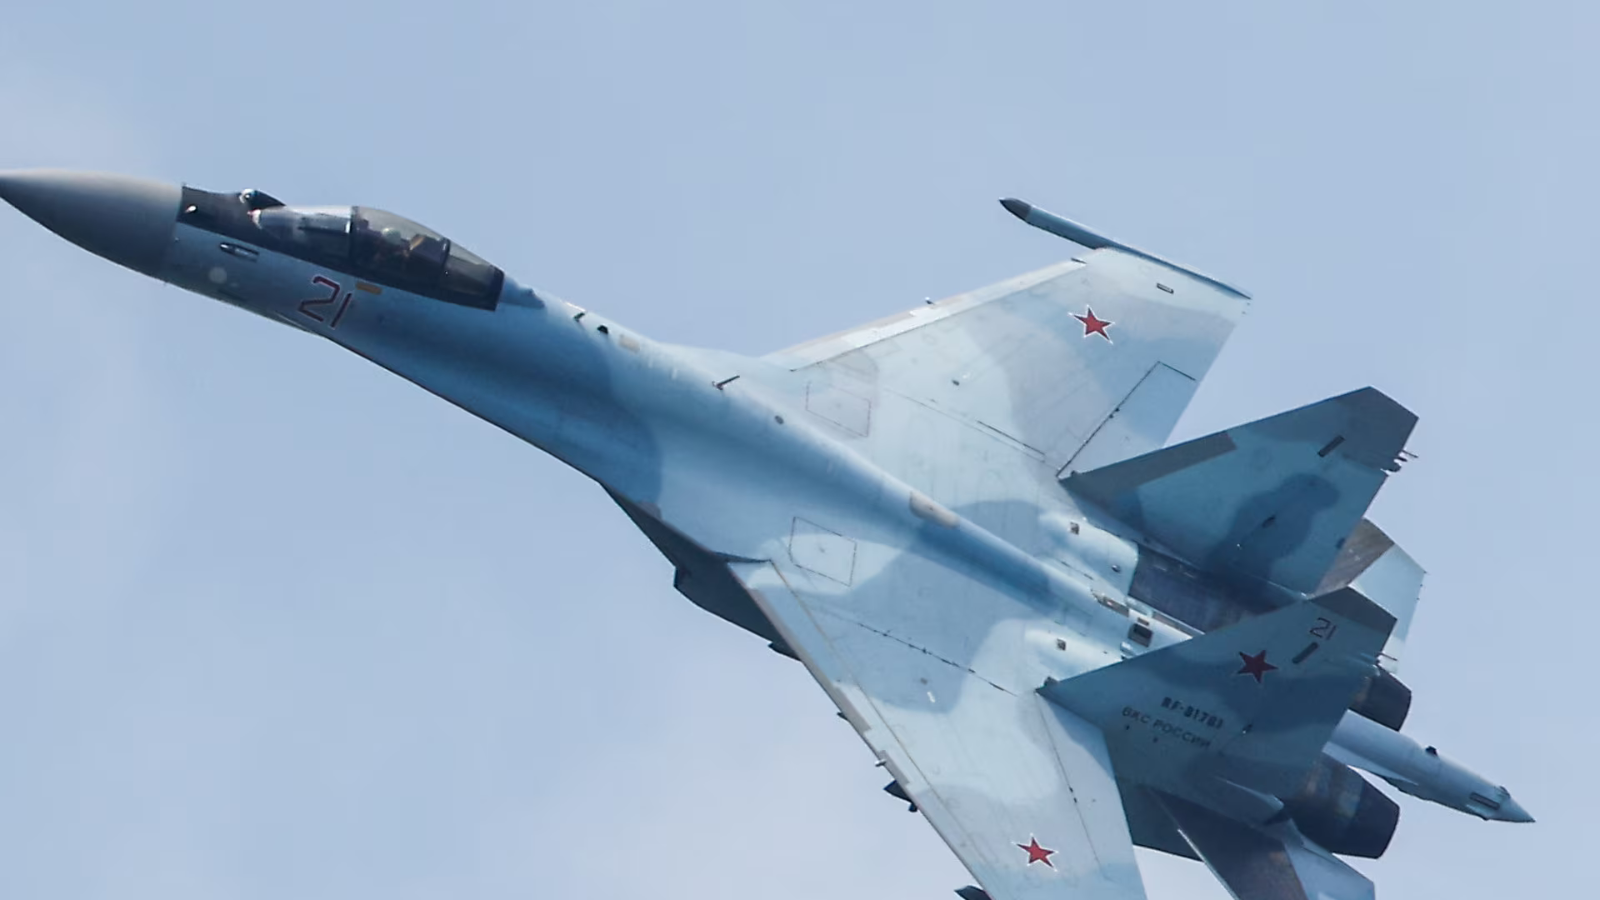 سقوط مقاتلة روسية  طراز "سو 34" في فولغوغراد